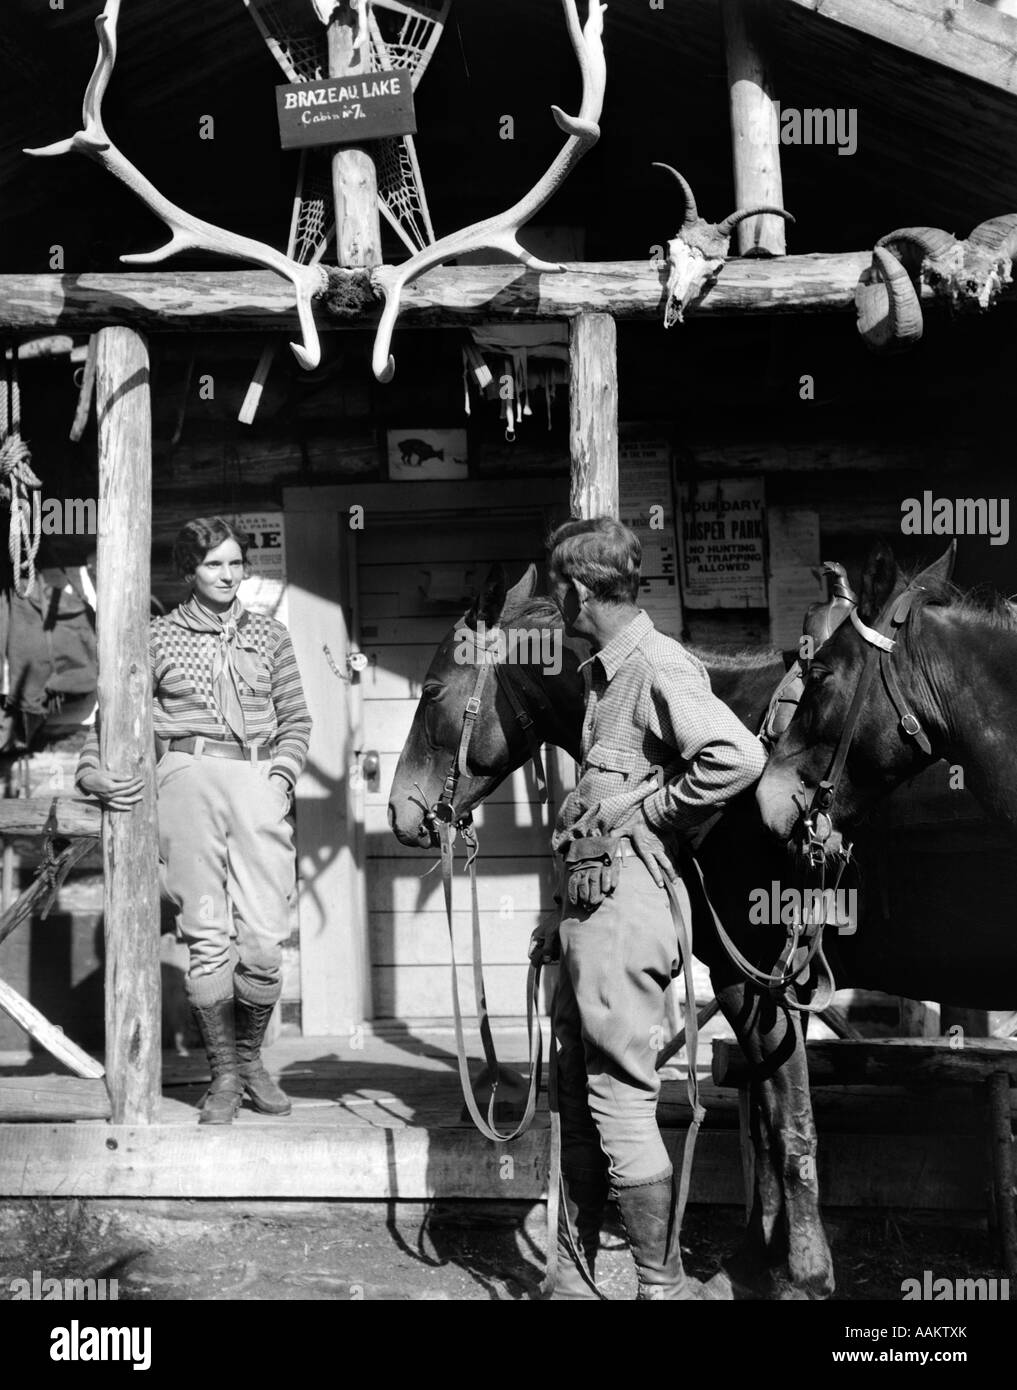 Années 1920 Années 1930 et deux chevaux à l'avant du pavillon de chasse de l'Ouest porche avec crânes trophées BOIS BRAZEAU LAKE ALBERTA Banque D'Images